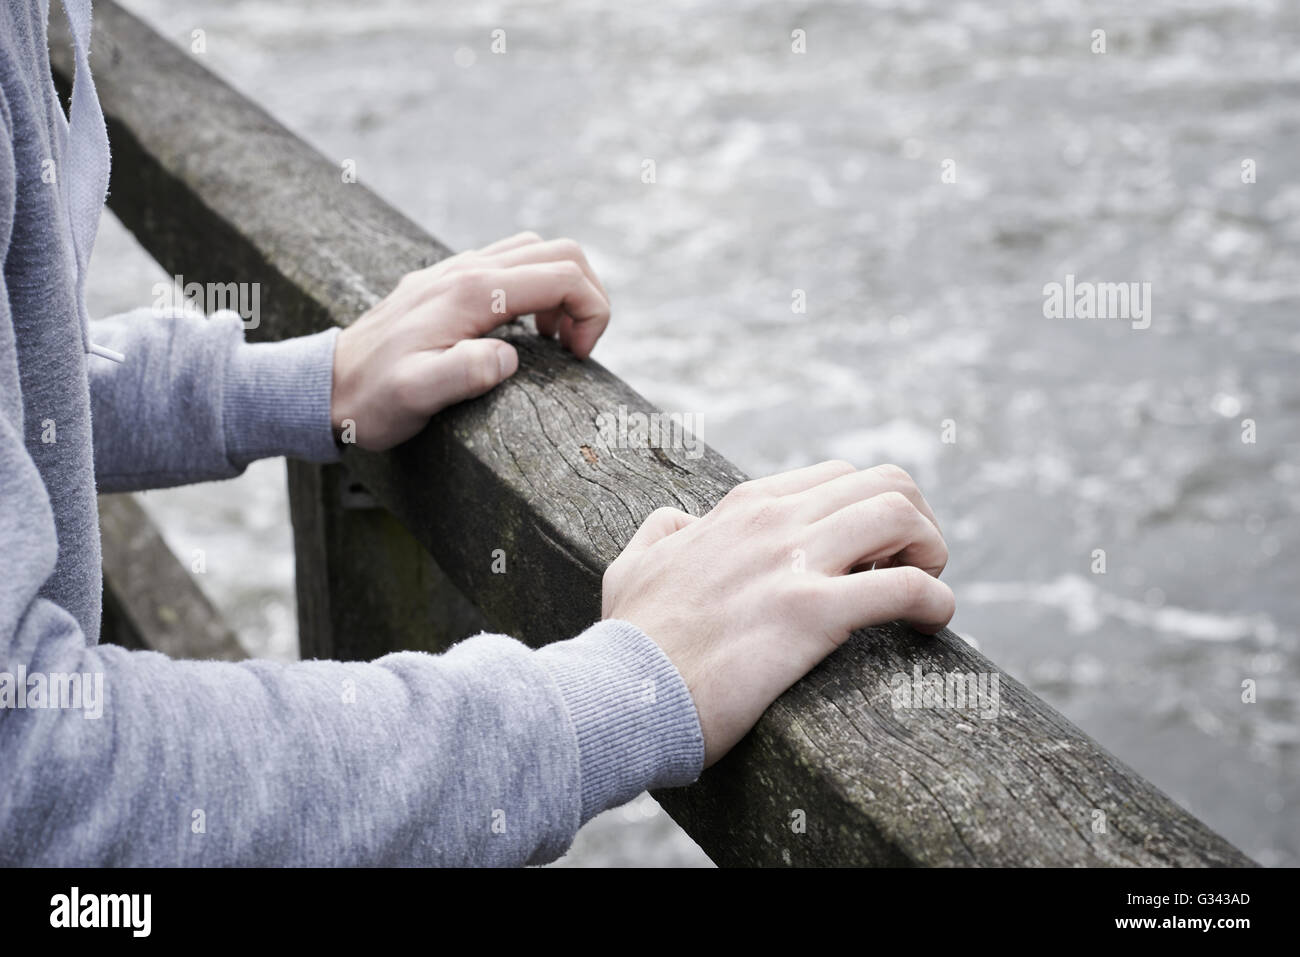 Pisado Joven contemplando el suicidio en el puente sobre el río Foto de stock